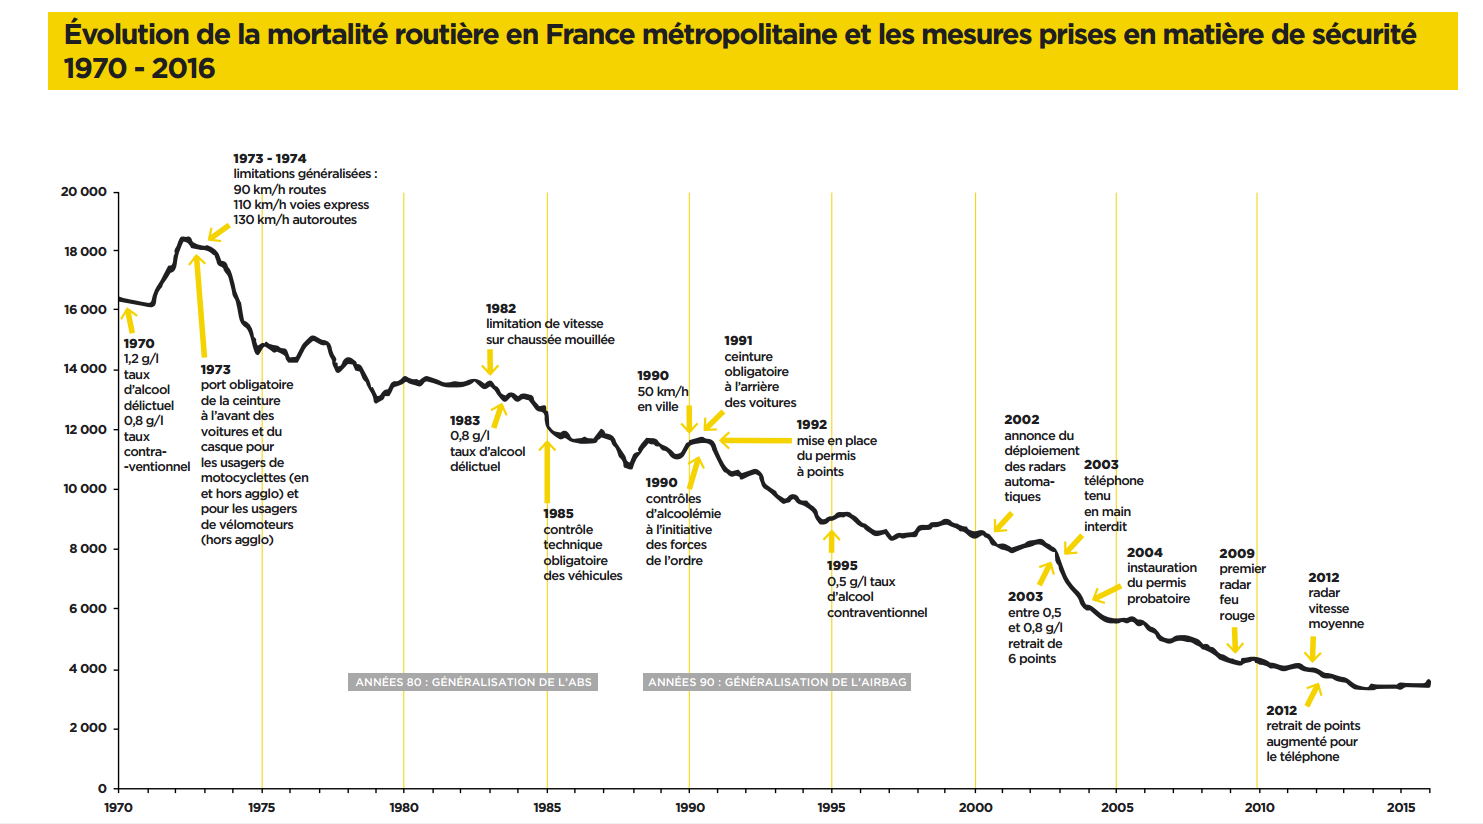 Evolution de la mortalite routiere en France et les mesures prises depuis 1970